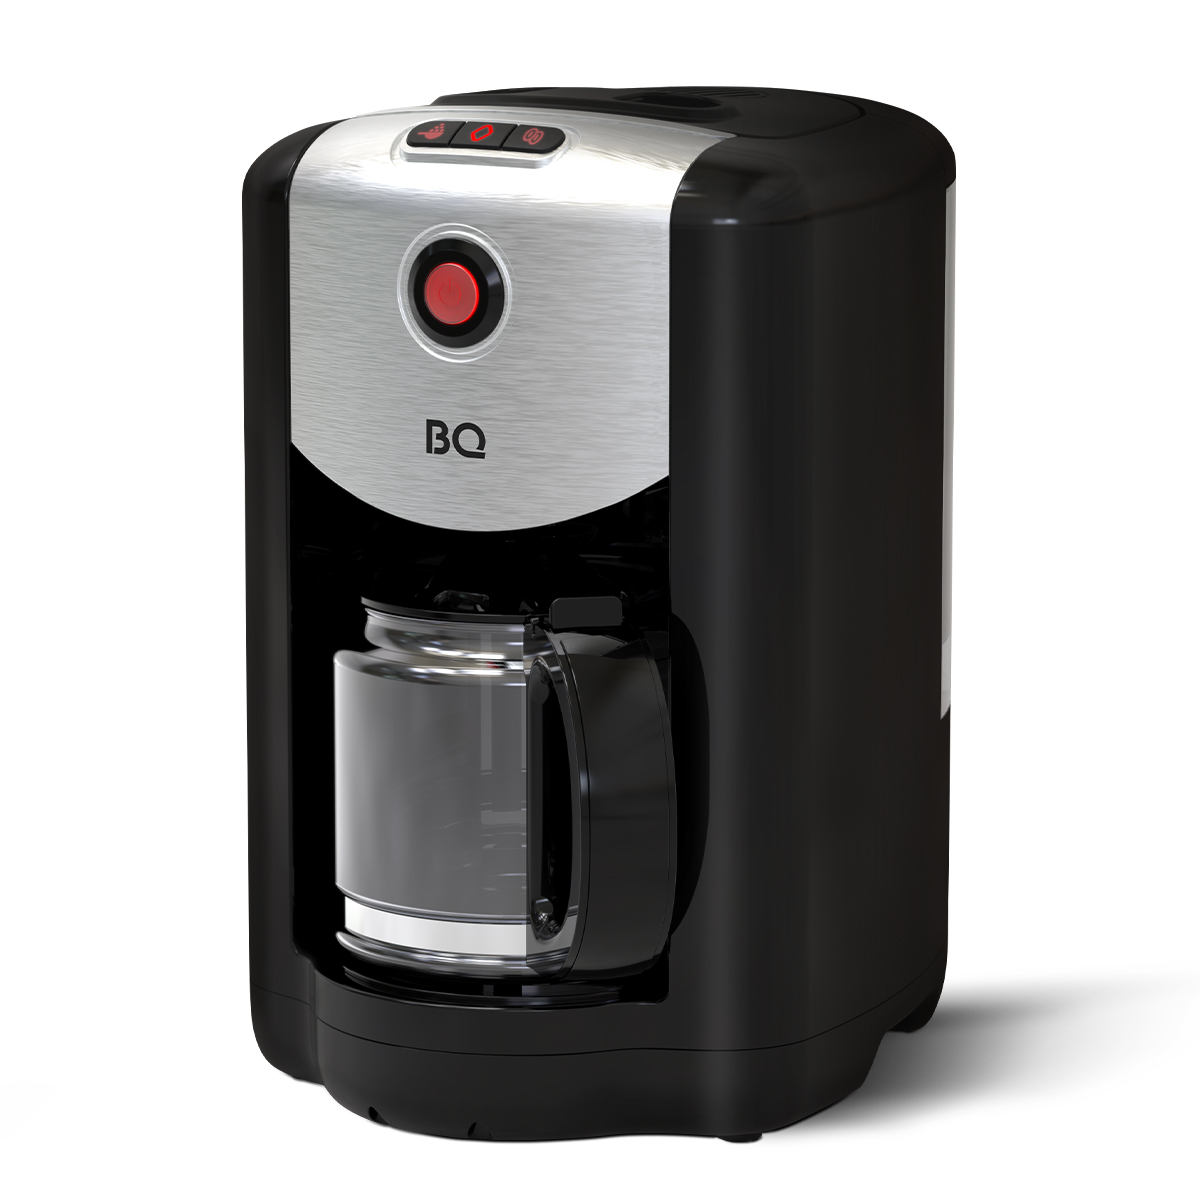 Кофеварка капельного типа BQ CM1009 серебристый, черный кофеварка капельного типа bq cm7002 серебристый